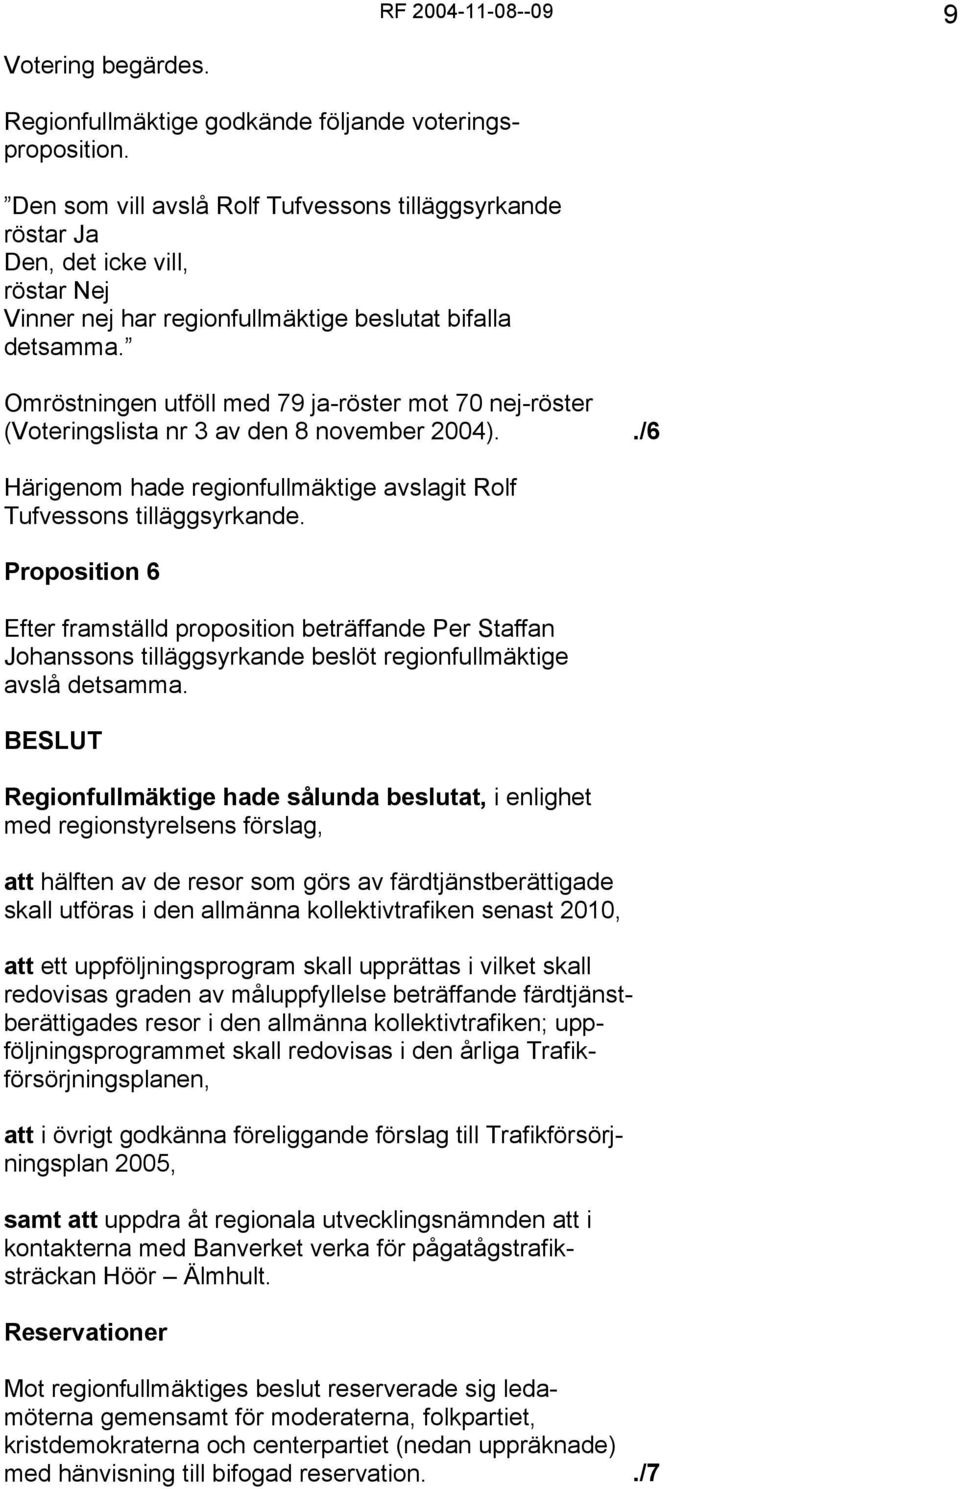 Omröstningen utföll med 79 ja-röster mot 70 nej-röster (Voteringslista nr 3 av den 8 november 2004)../6 Härigenom hade regionfullmäktige avslagit Rolf Tufvessons tilläggsyrkande.